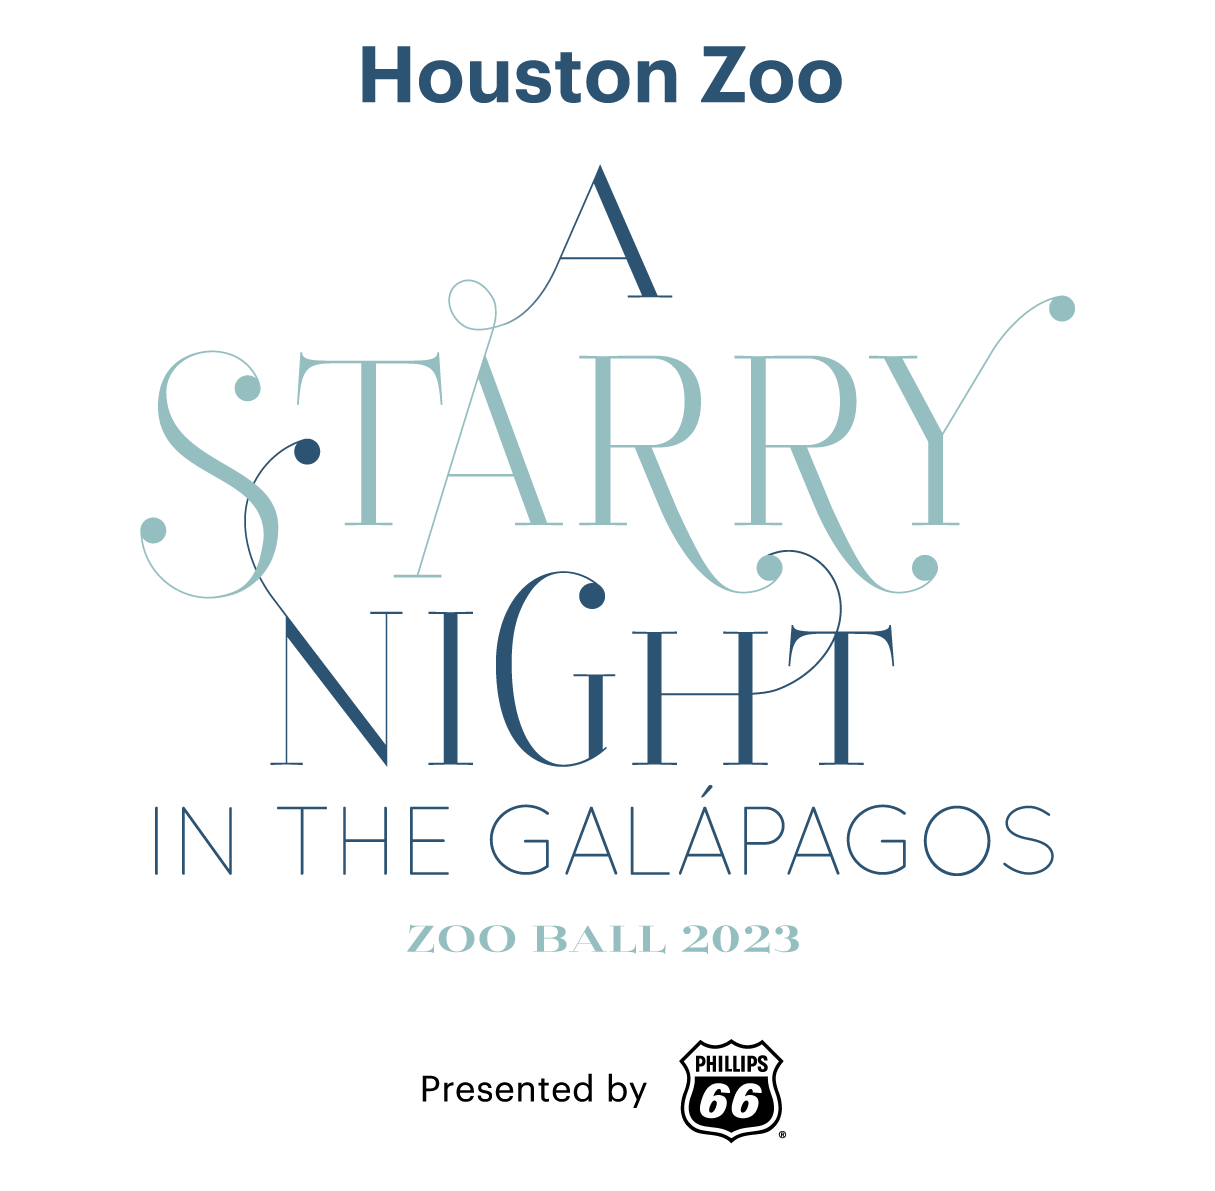 Zoo Ball 2023 The Houston Zoo